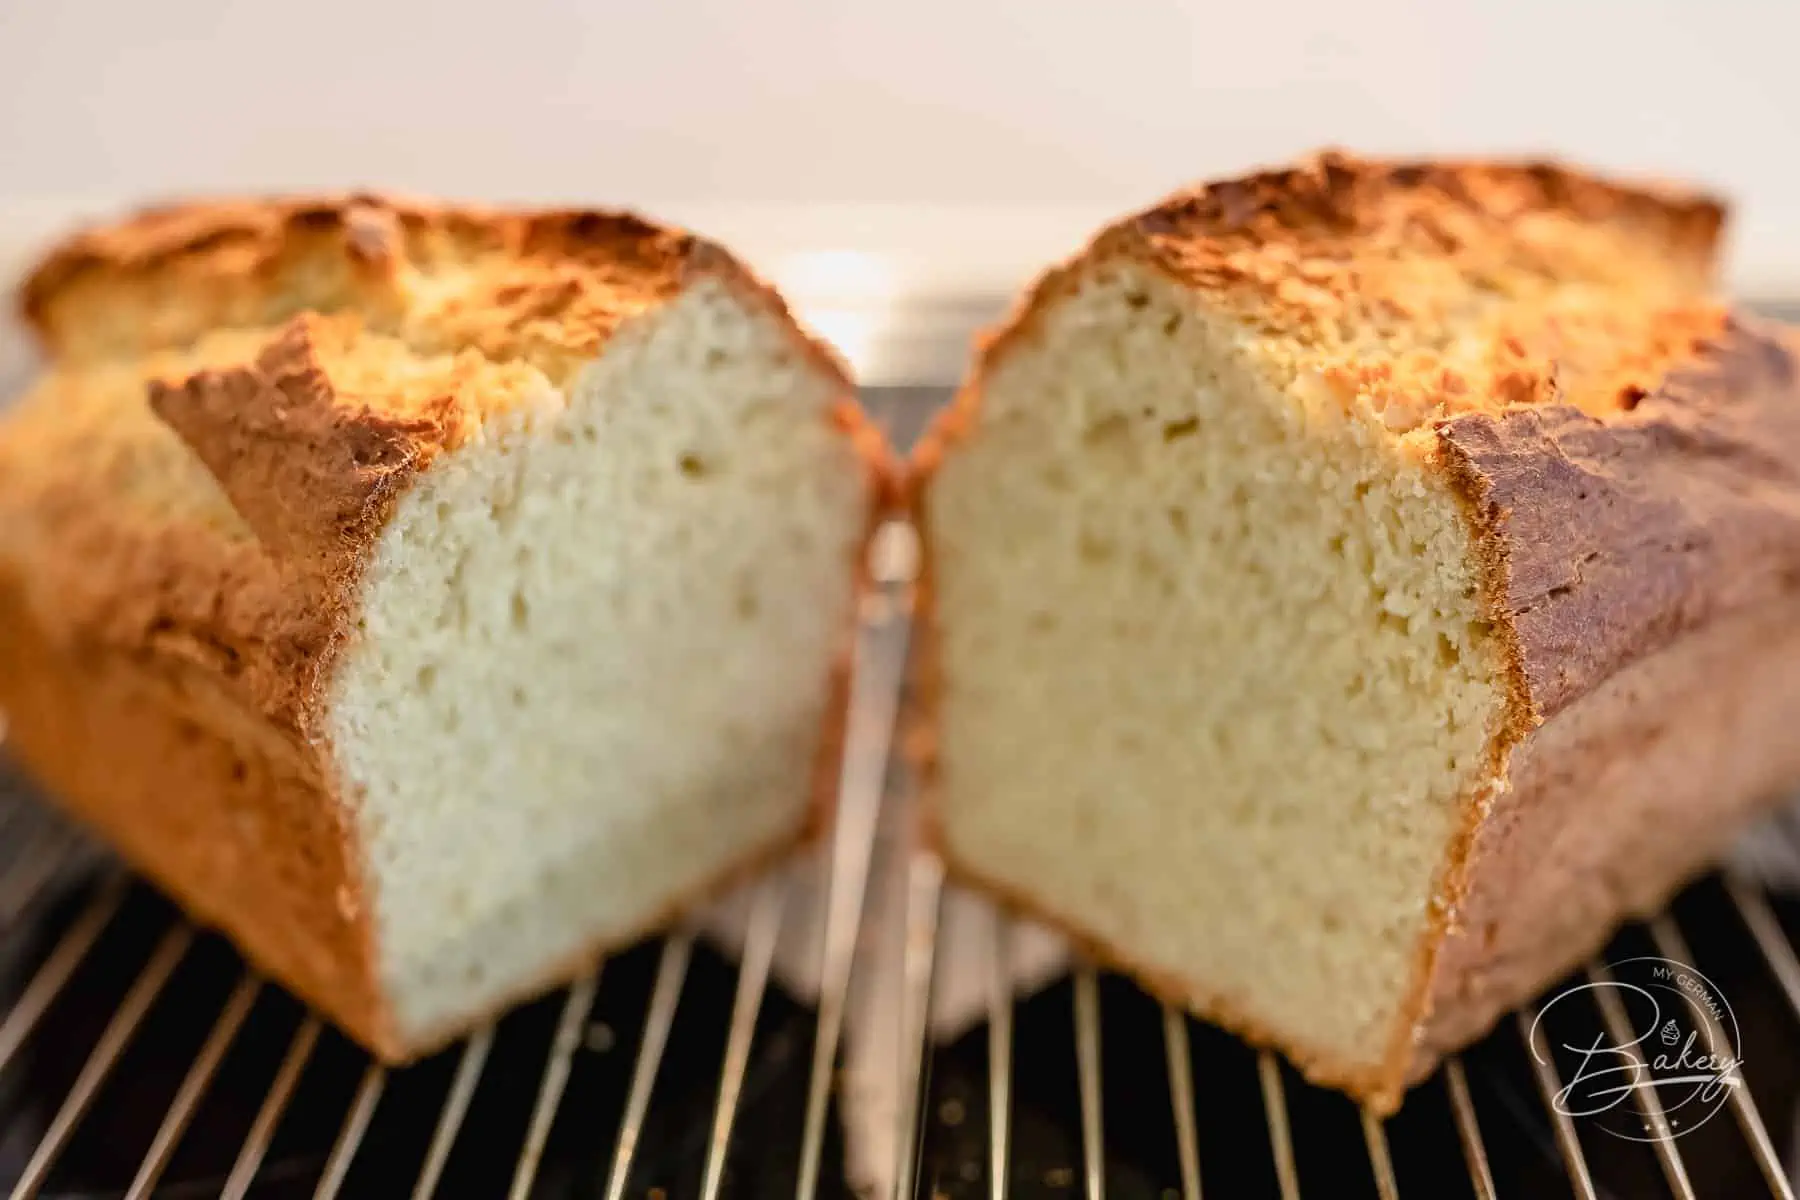 Einfacher süßer Stuten - gelingt immer - wie beim Bäcker - frisch selbst gebacken - Sonntagsfrühstück - Stuten und süßes Weißbrot